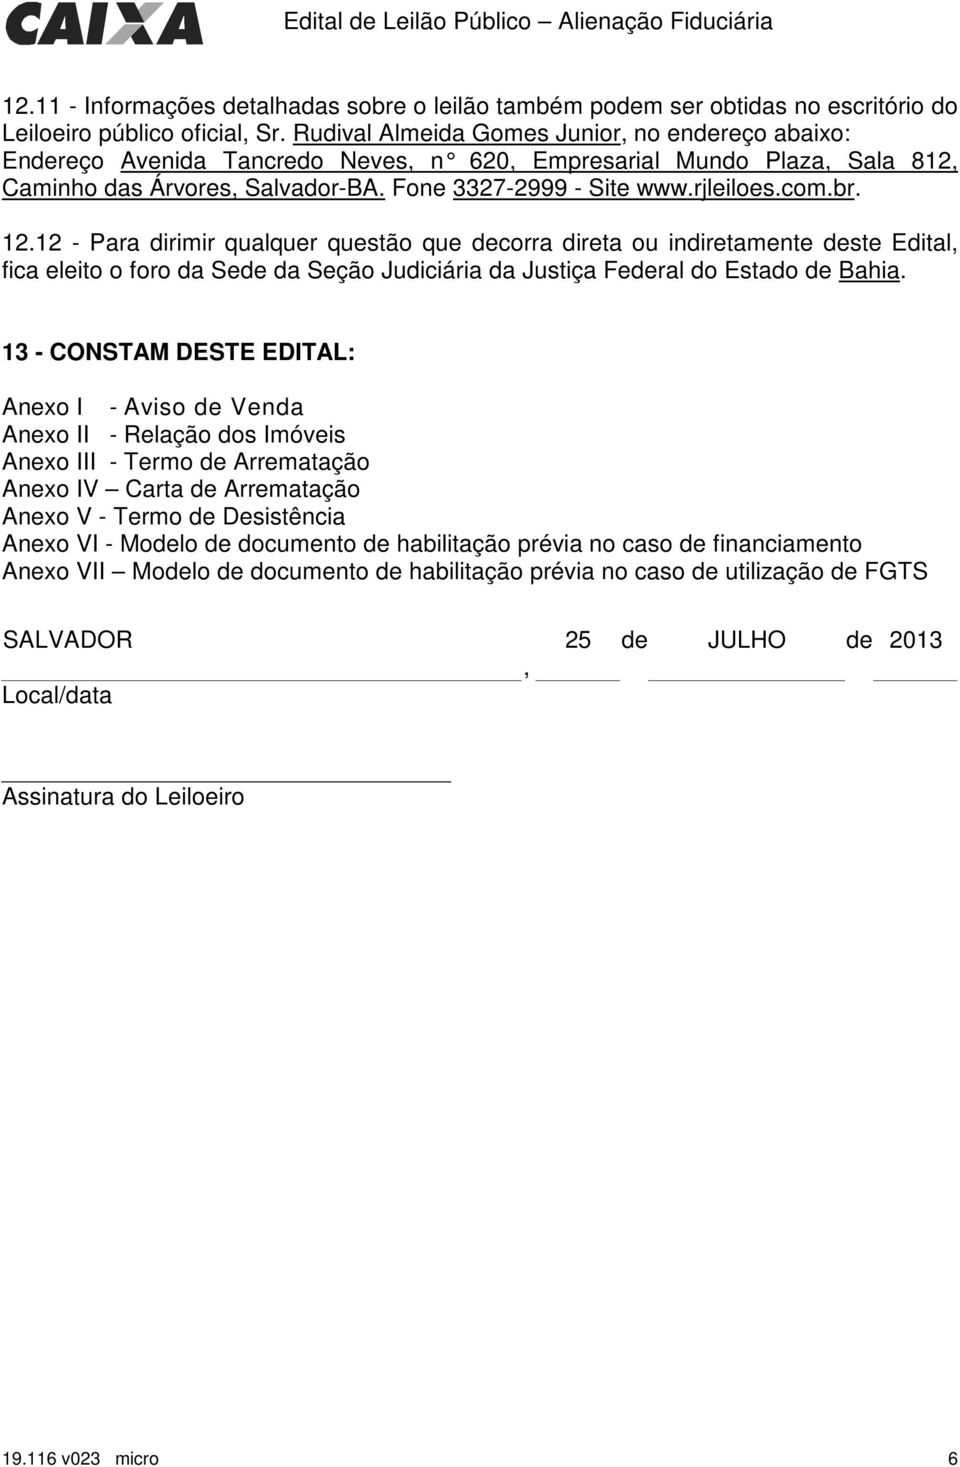 br. 12.12 - Para dirimir qualquer questão que decorra direta ou indiretamente deste Edital, fica eleito o foro da Sede da Seção Judiciária da Justiça Federal do Bahia.